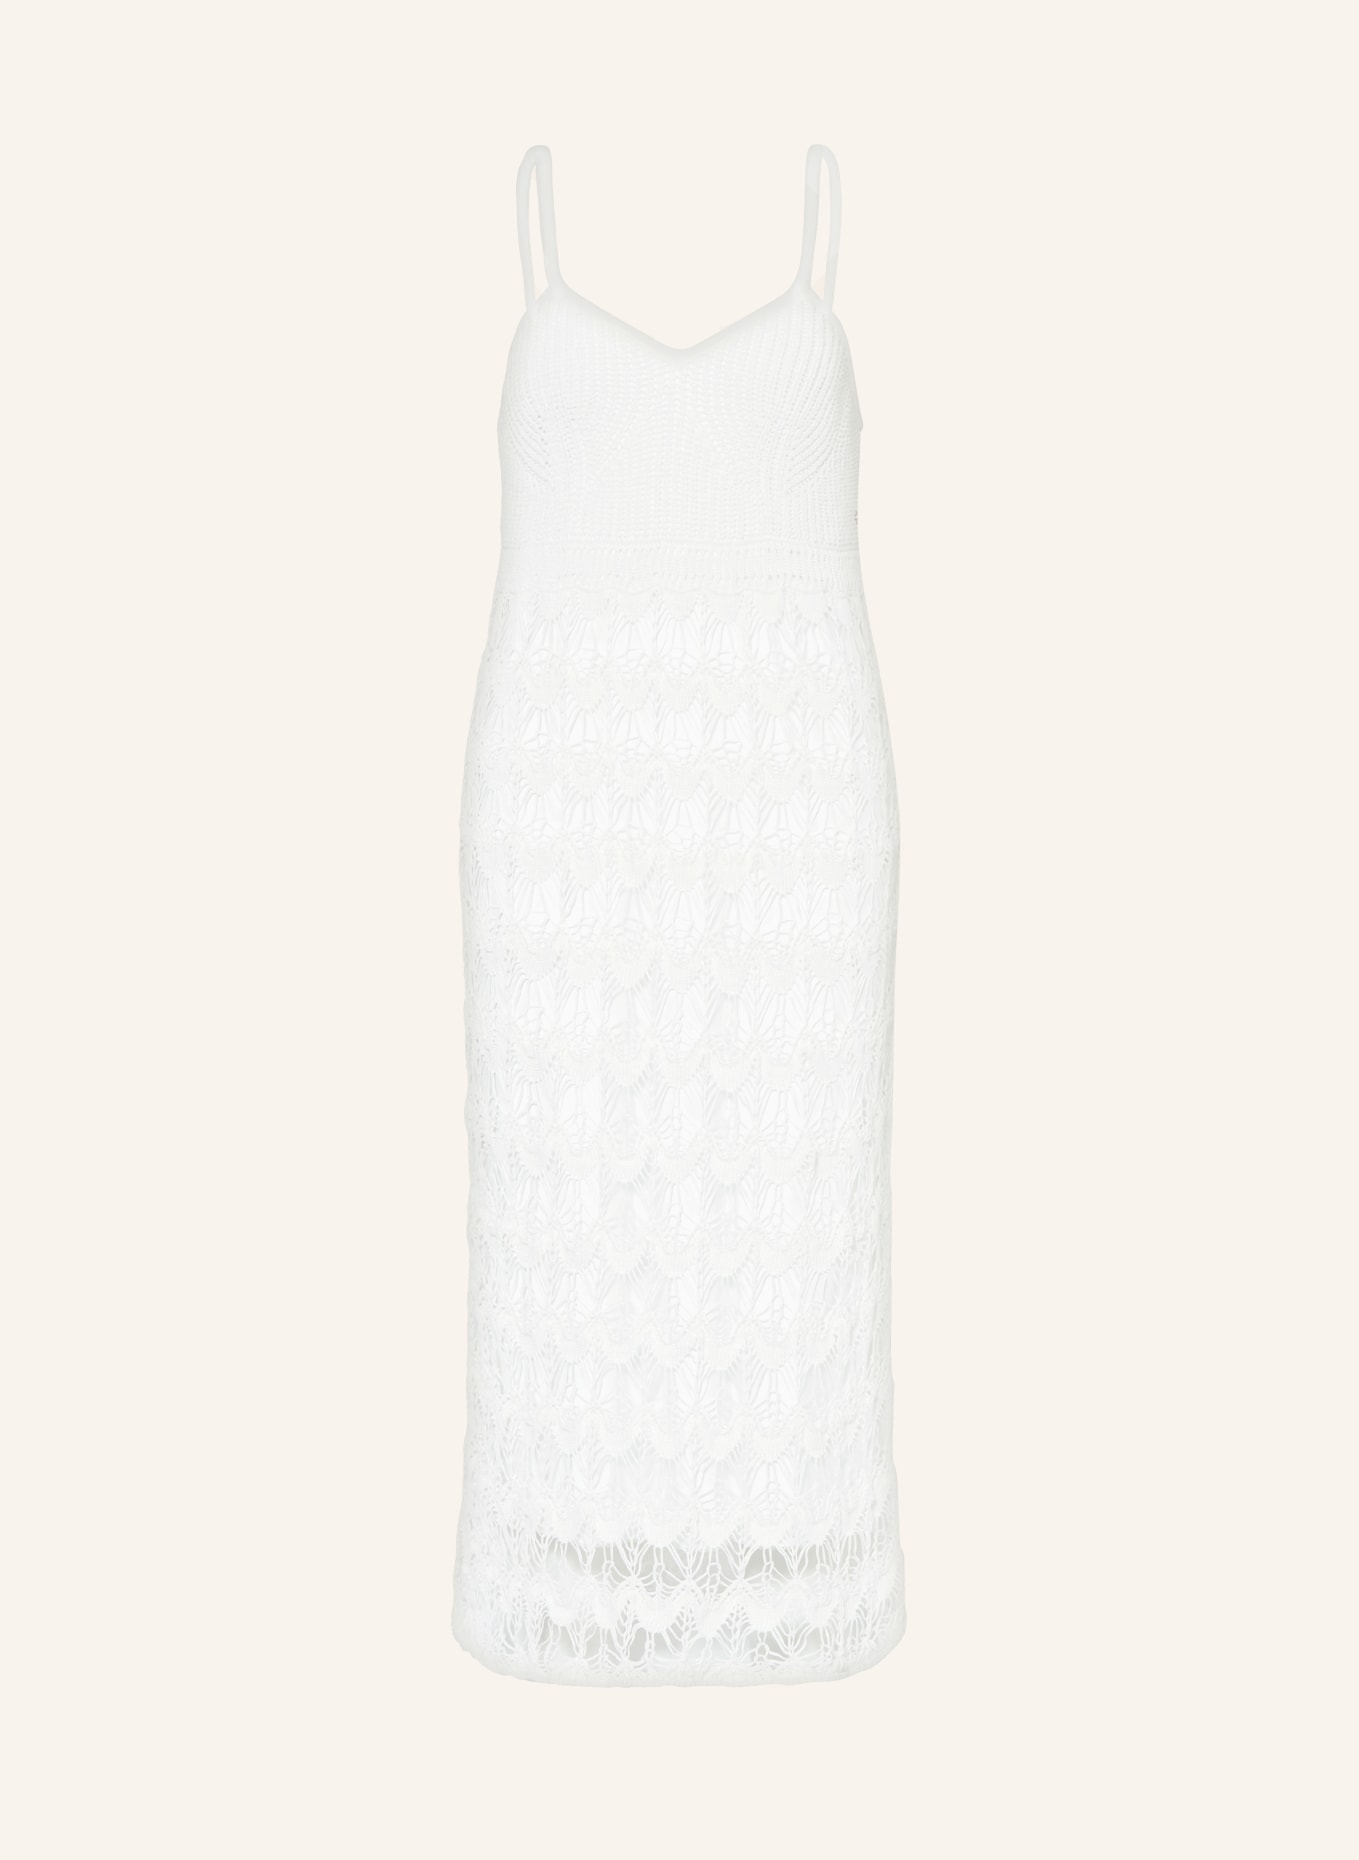 MARC CAIN Knit dress, Color: 110 off (Image 1)